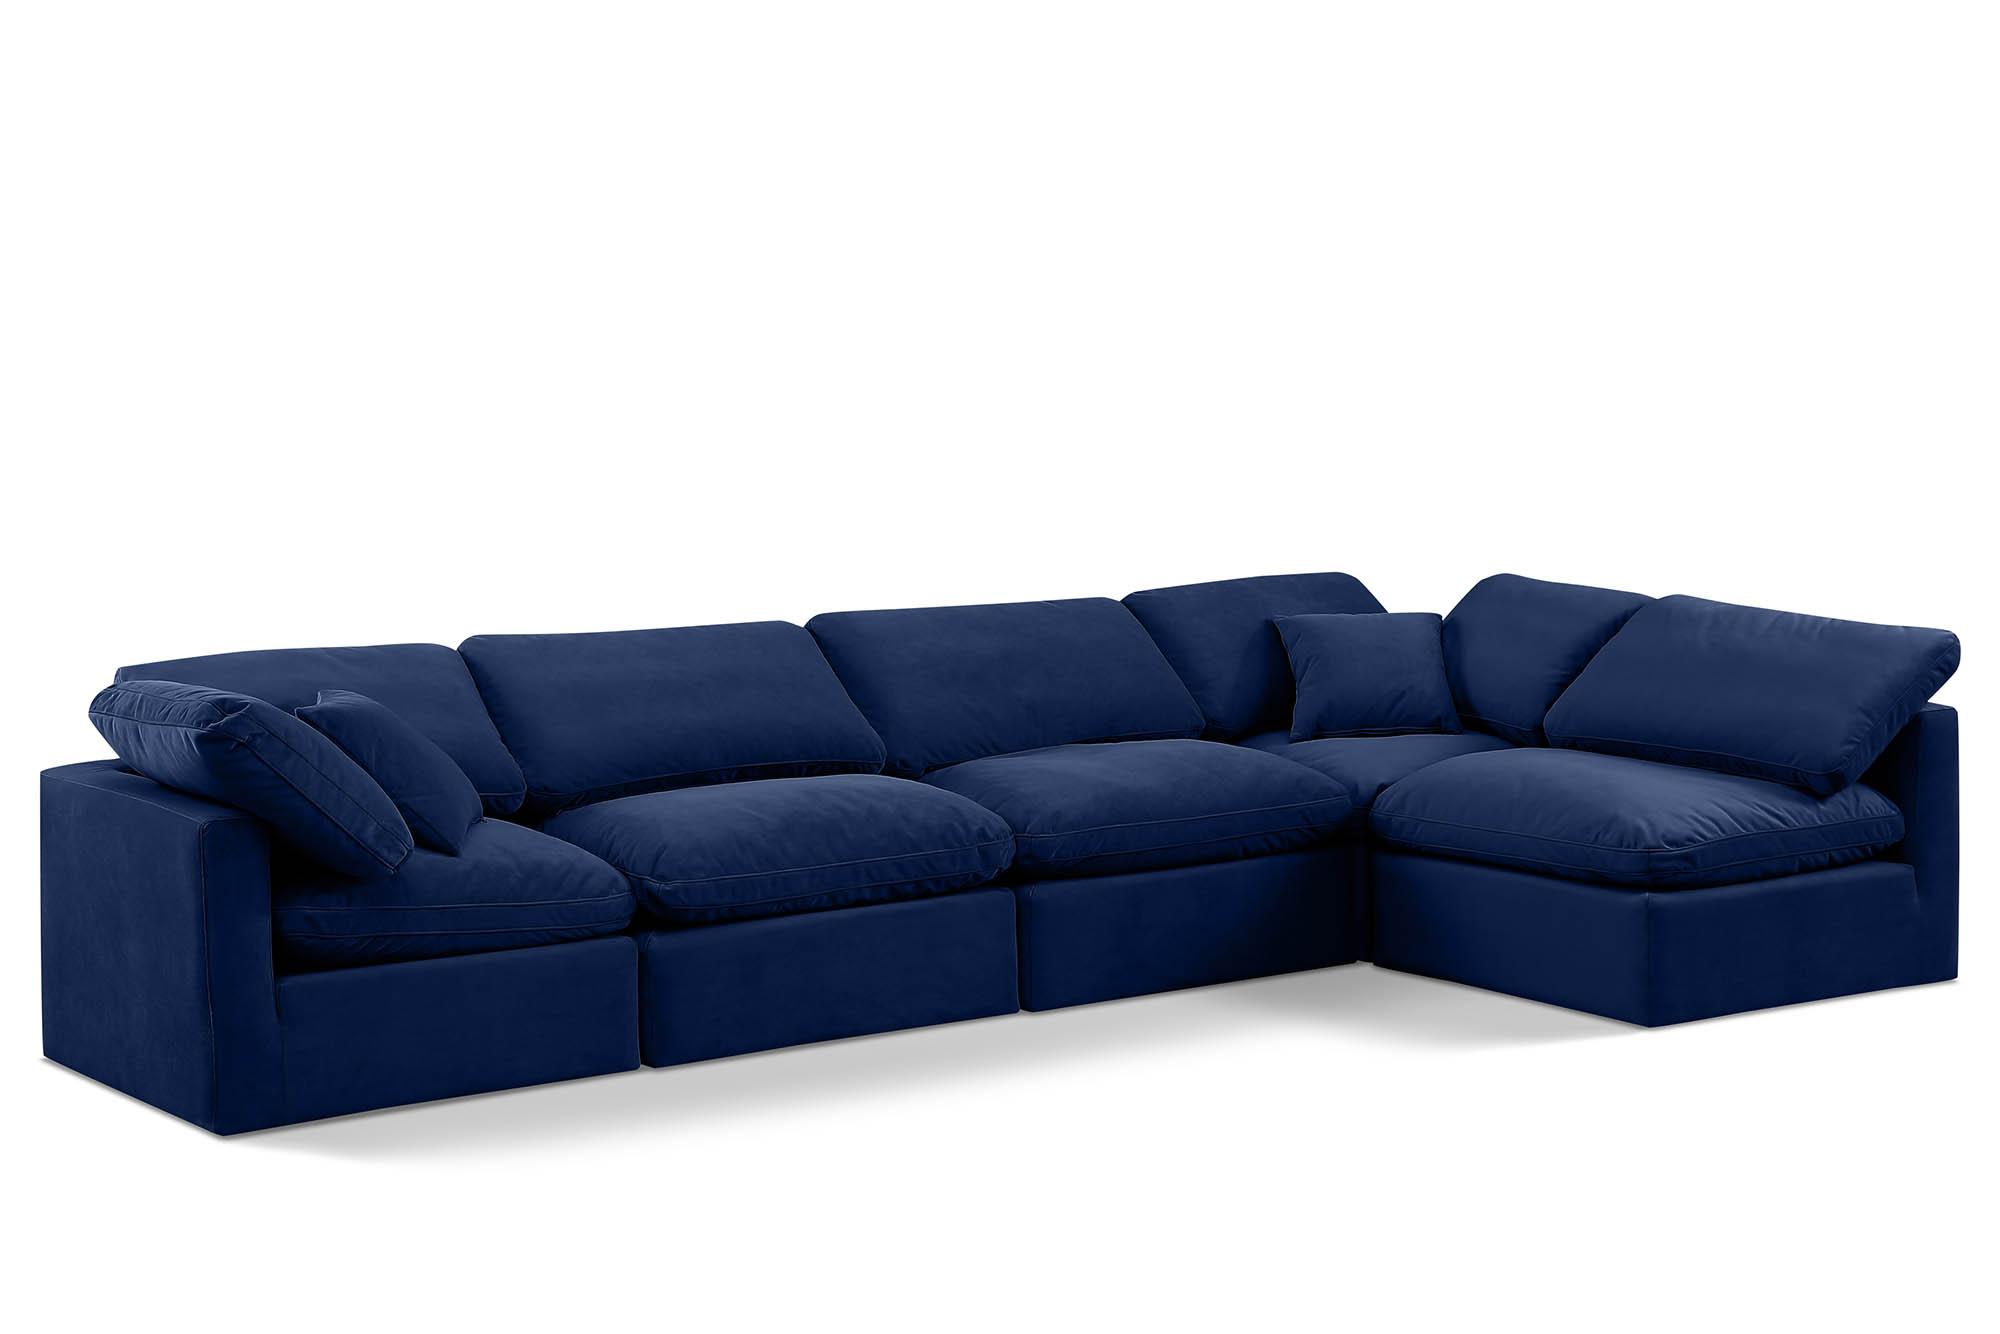 Contemporary, Modern Modular Sectional Sofa INDULGE 147Navy-Sec5D 147Navy-Sec5D in Navy Velvet